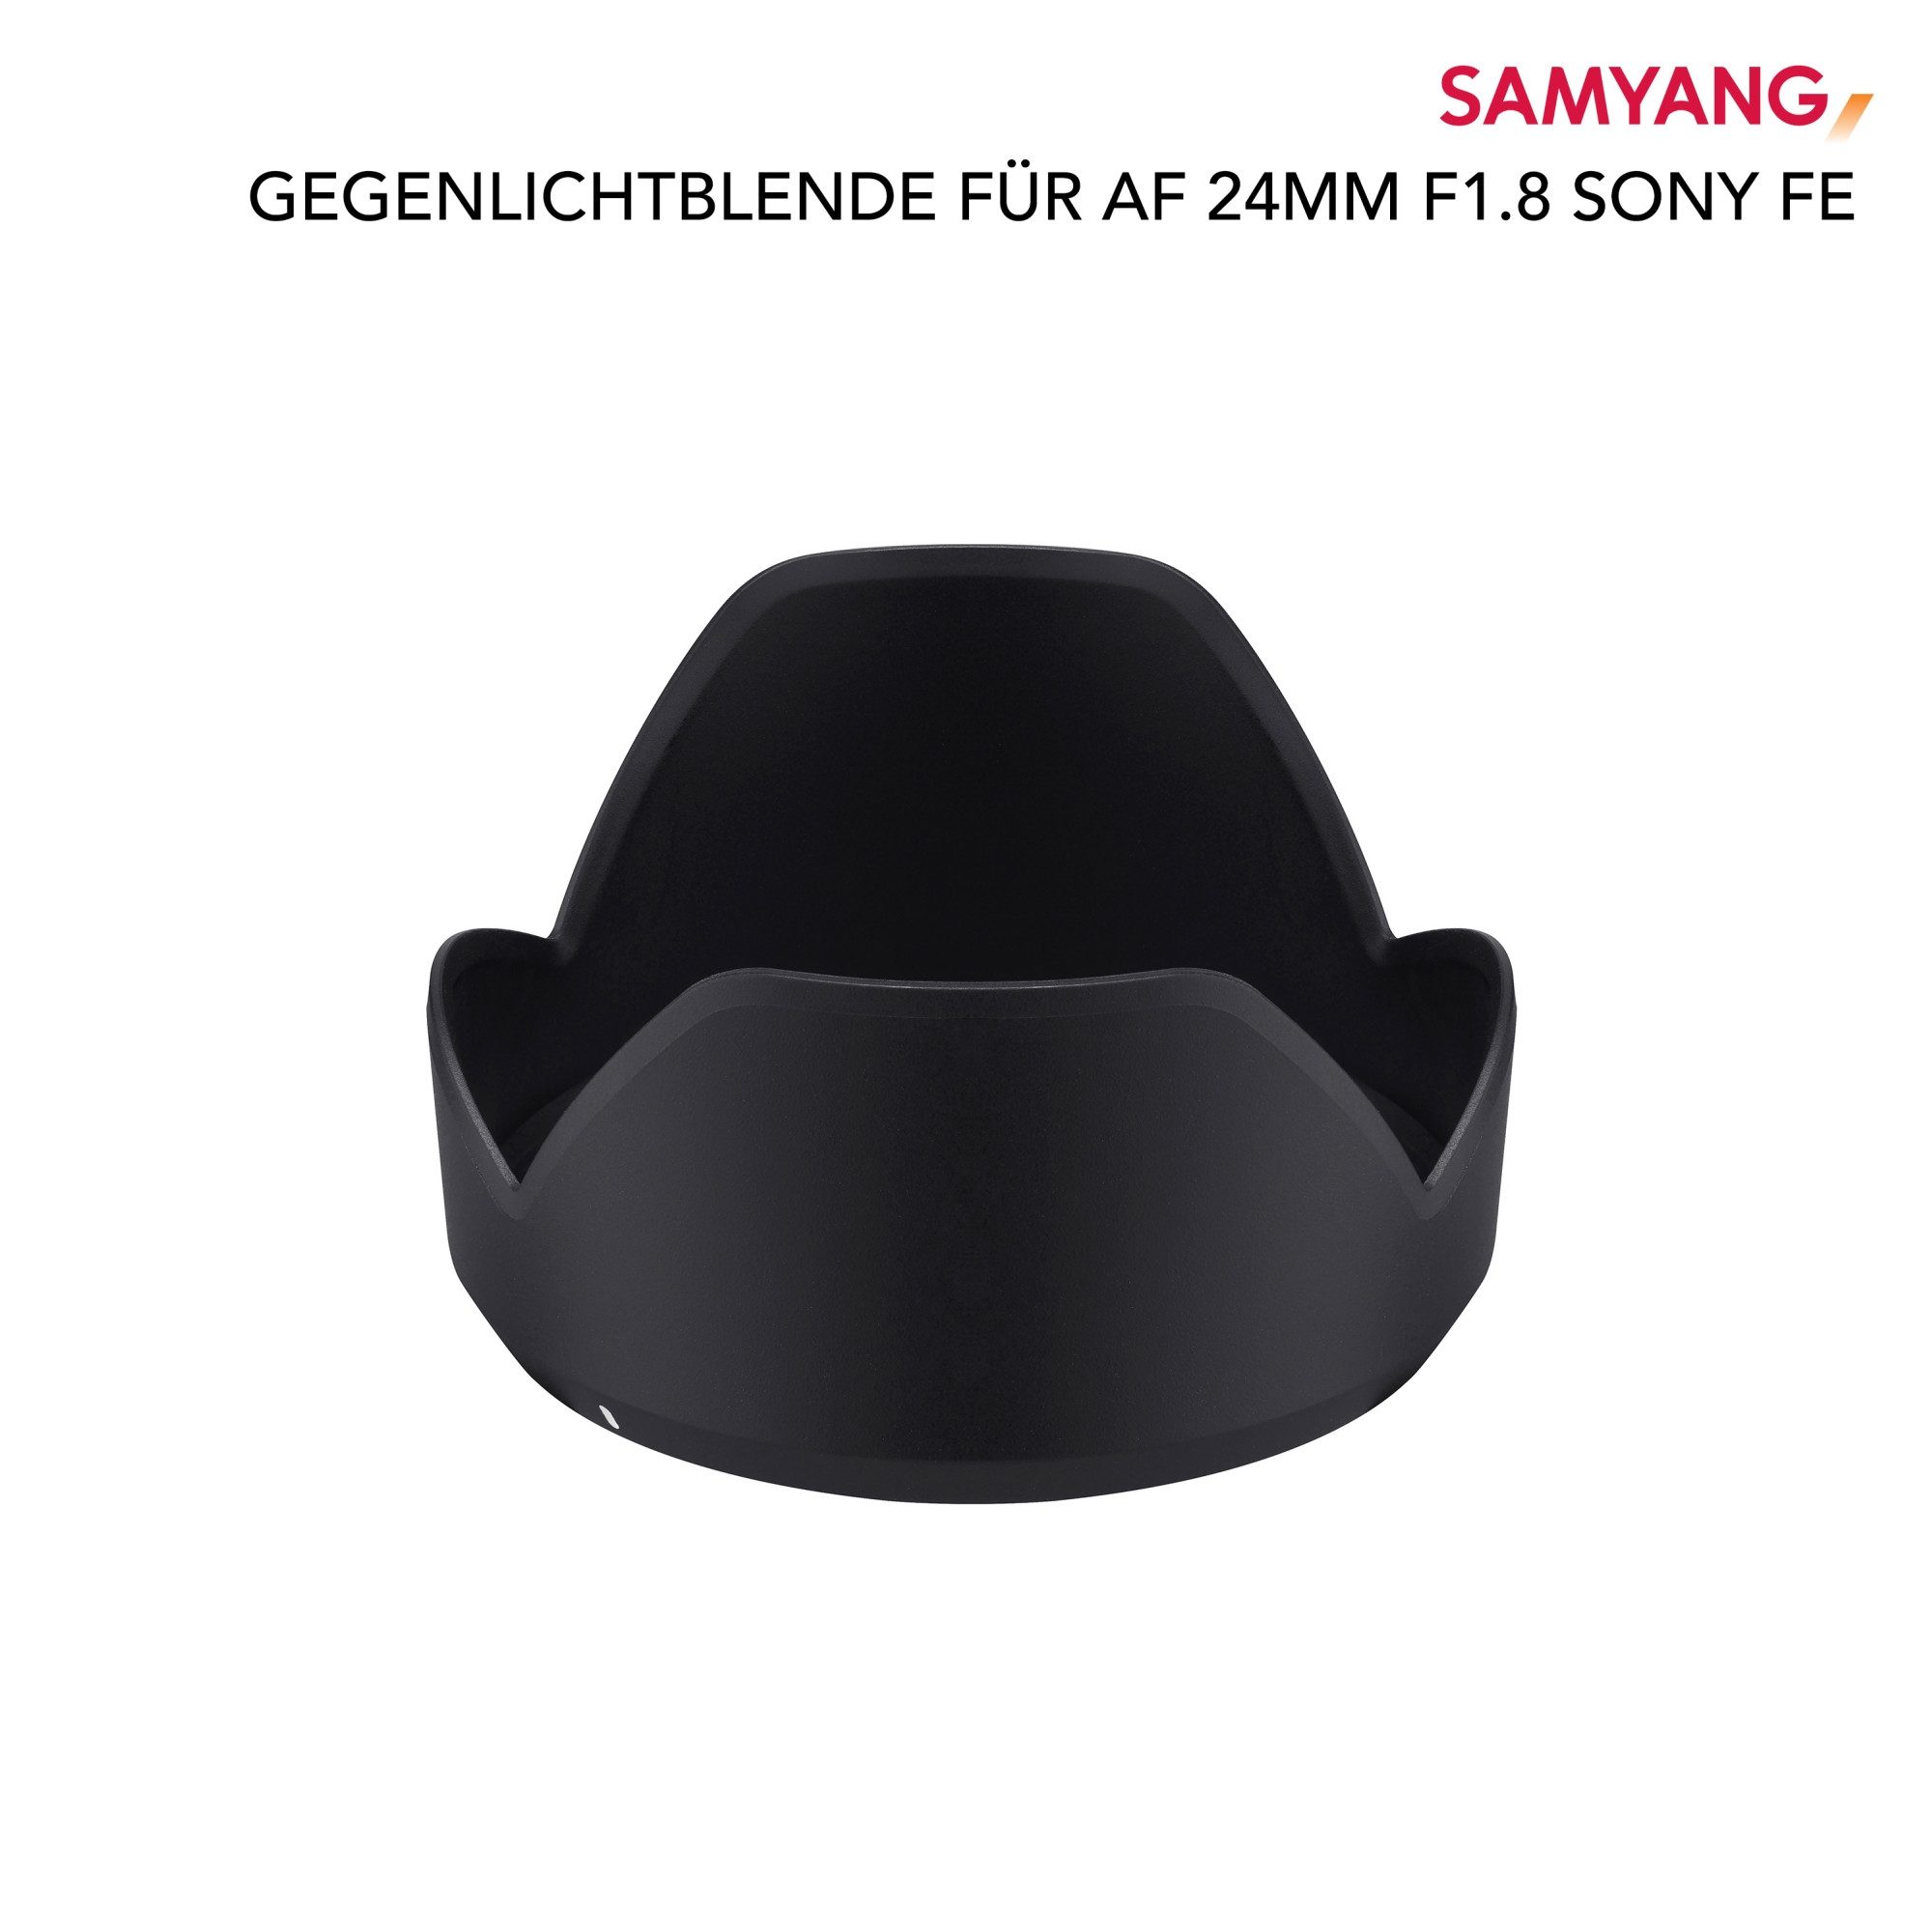 Samyang Gegenlichtblende für AF 24mm F1,8 Sony FE Gegenlichtblende